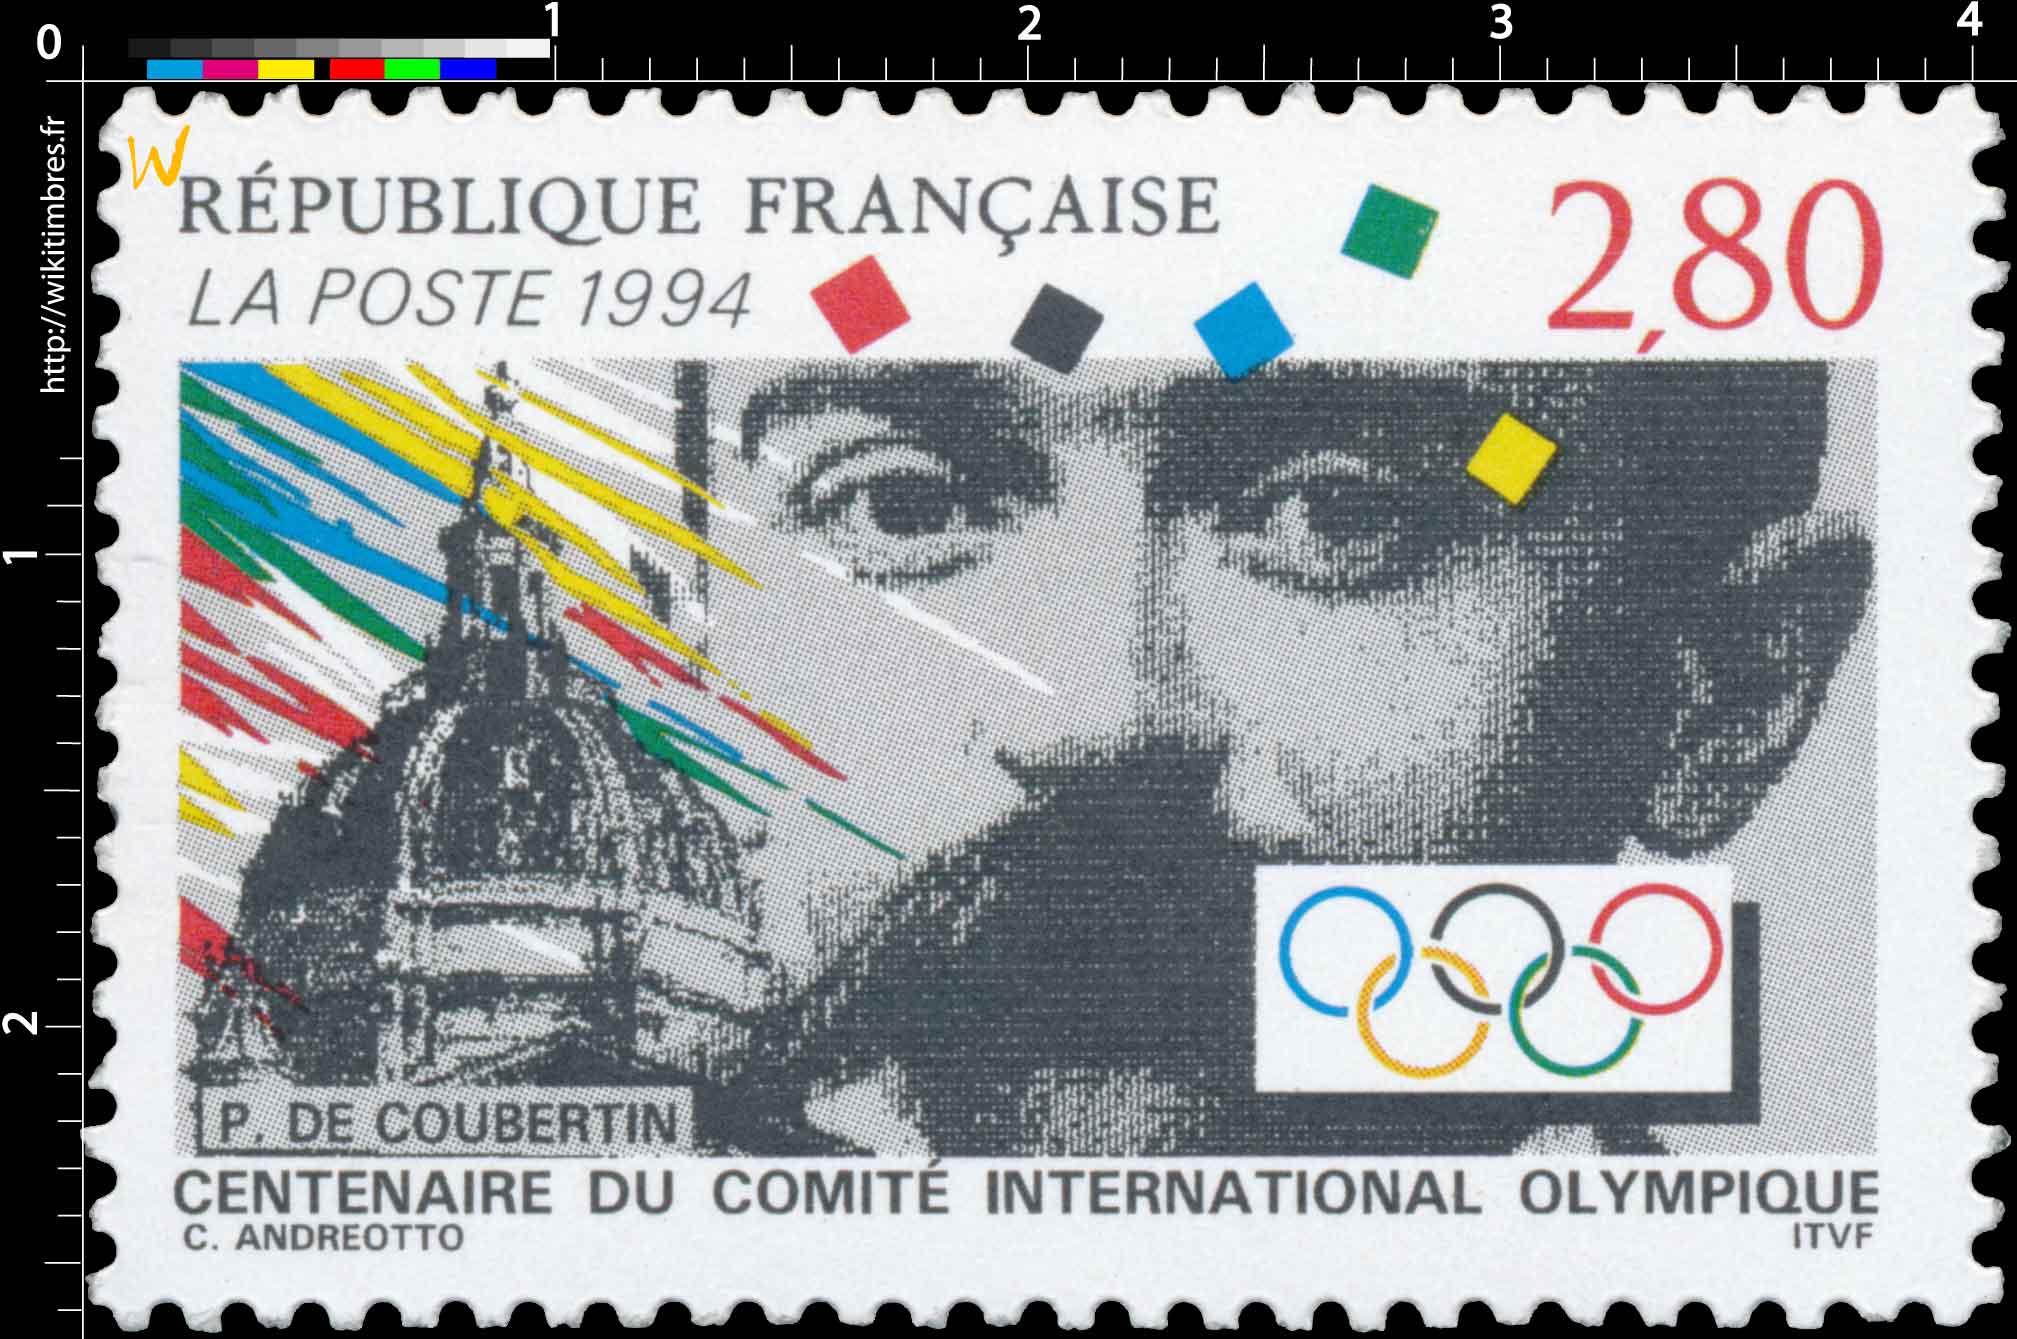 1994 CENTENAIRE DU COMITÉ INTERNATIONAL OLYMPIQUE P.DE COUBERTIN